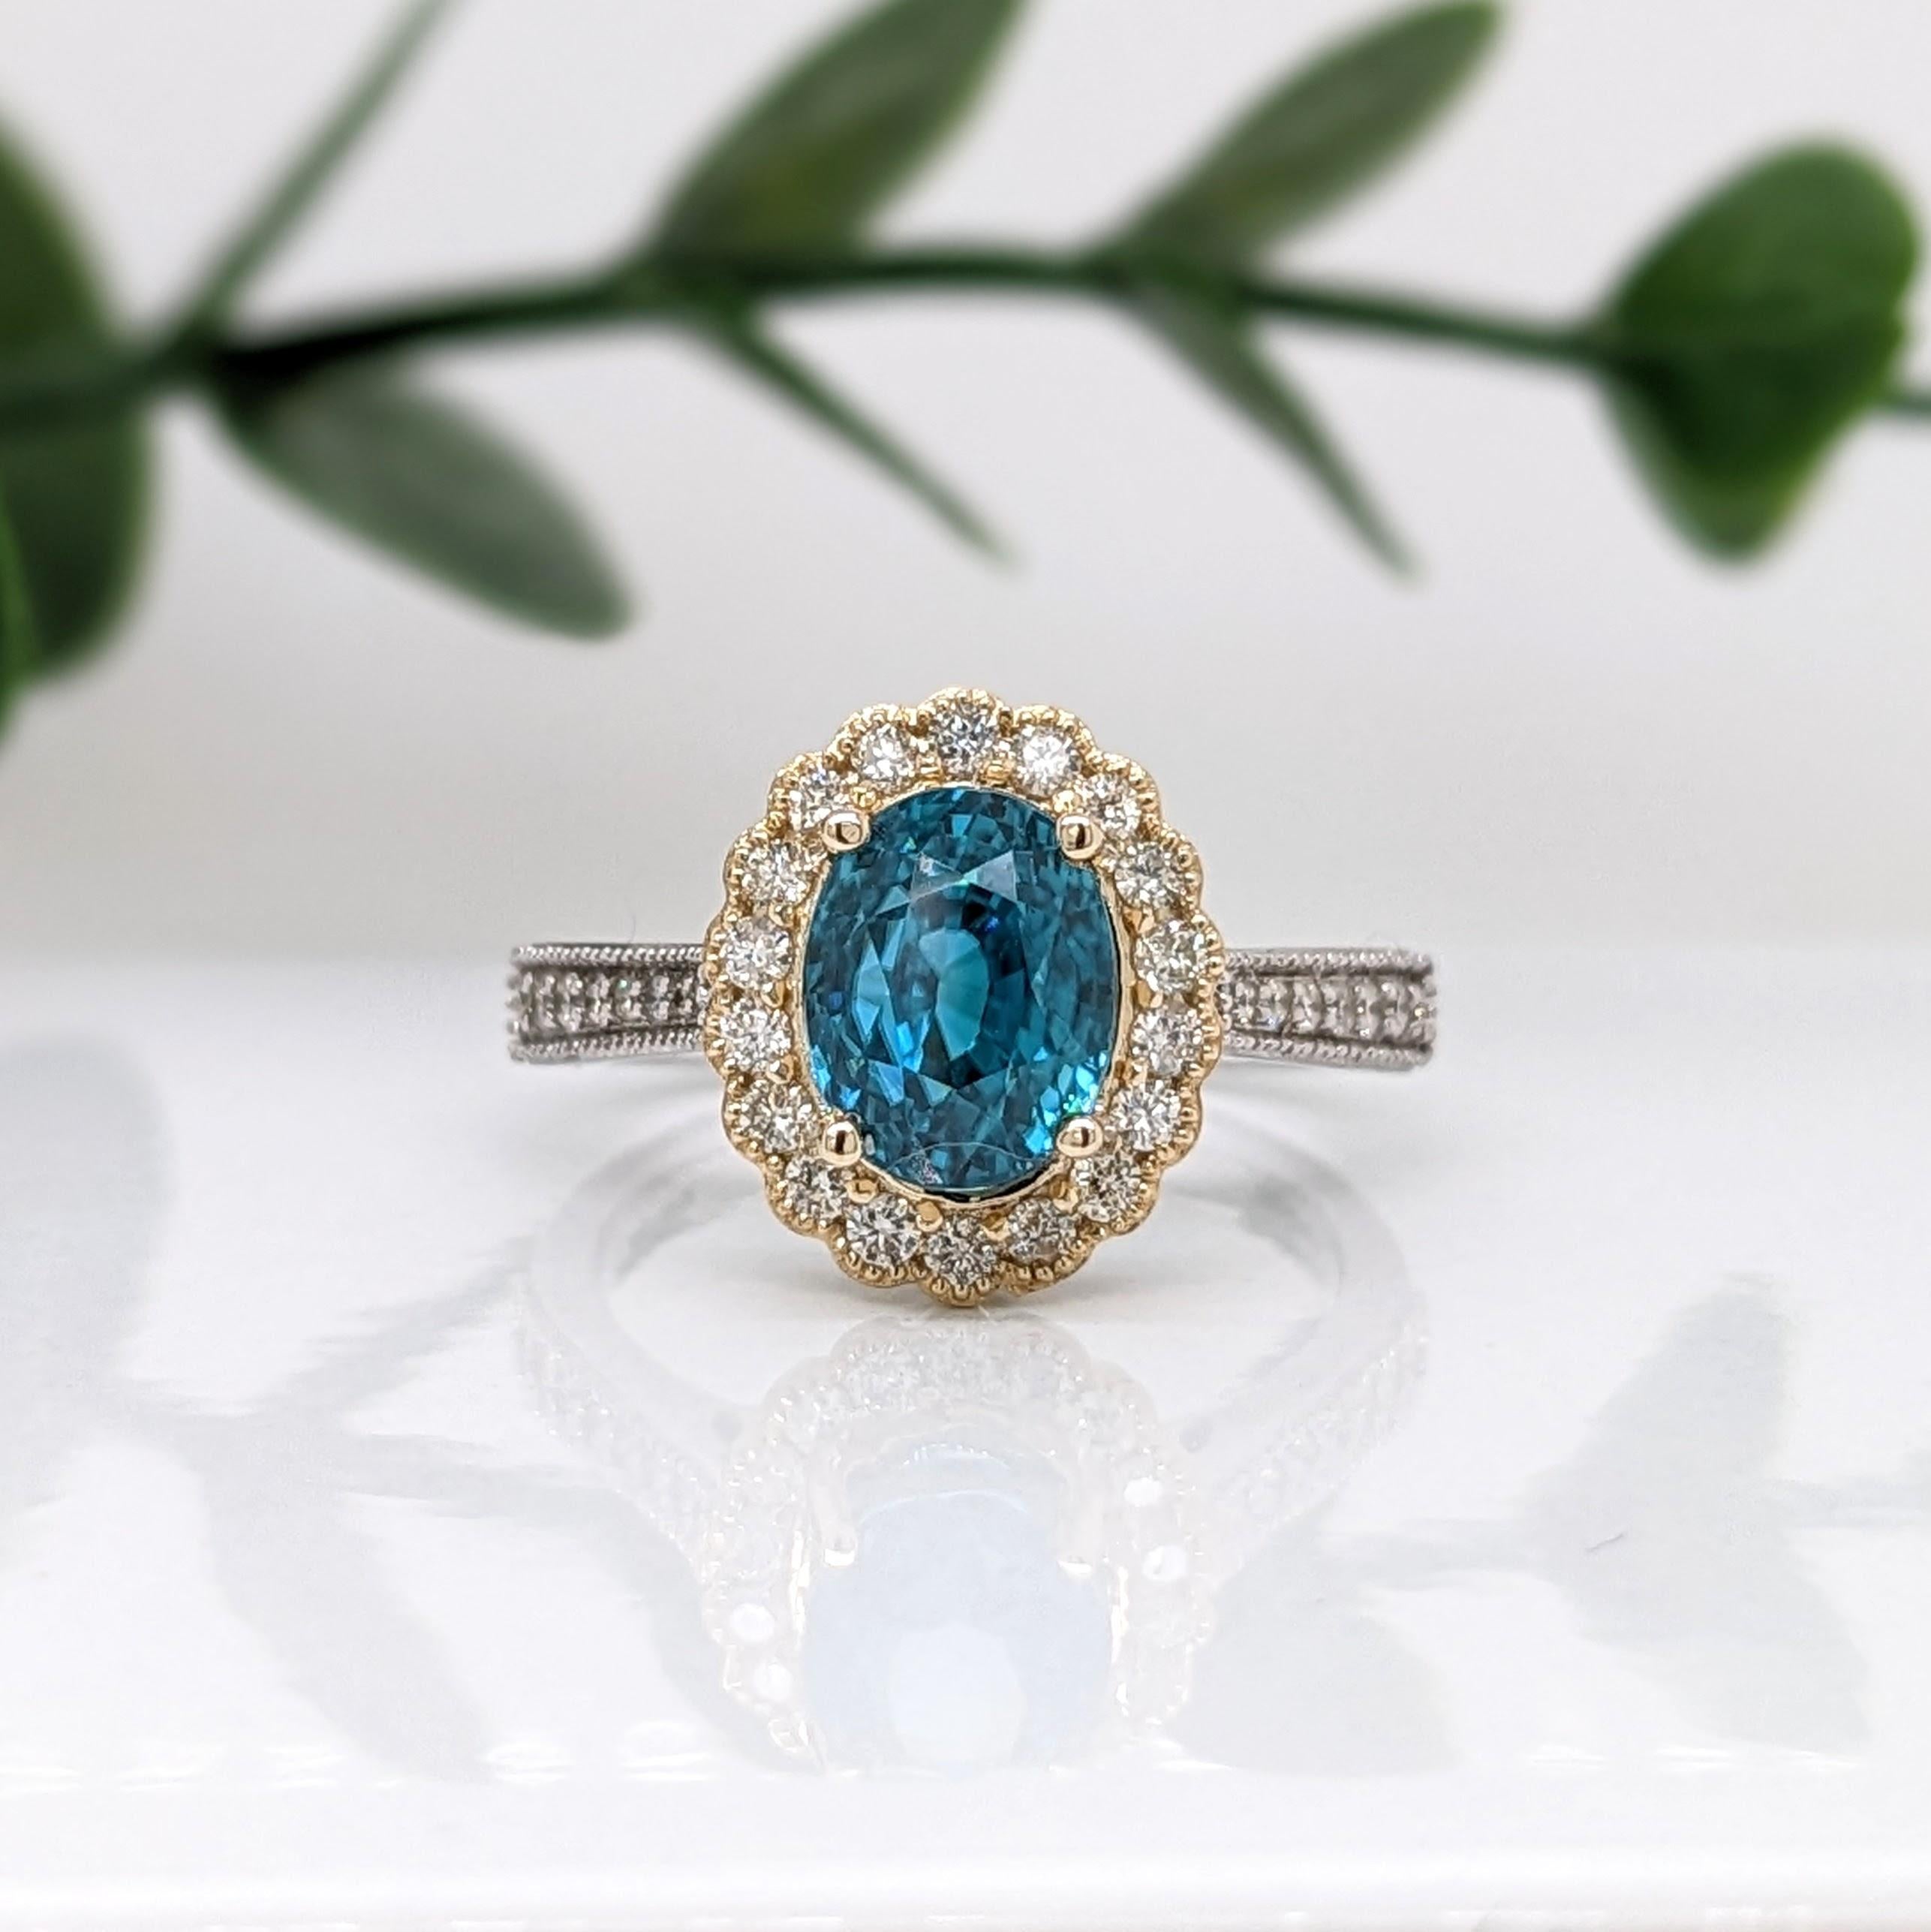 Dieser auffällige Ring zeigt einen herrlich funkelnden blauen Zirkon aus massivem 14-karätigem Gold mit schönen Diamanten. Dieser Ring der Collection'S ist ein atemberaubendes Accessoire für jeden Look!

Ein ausgefallenes Ringdesign, perfekt für